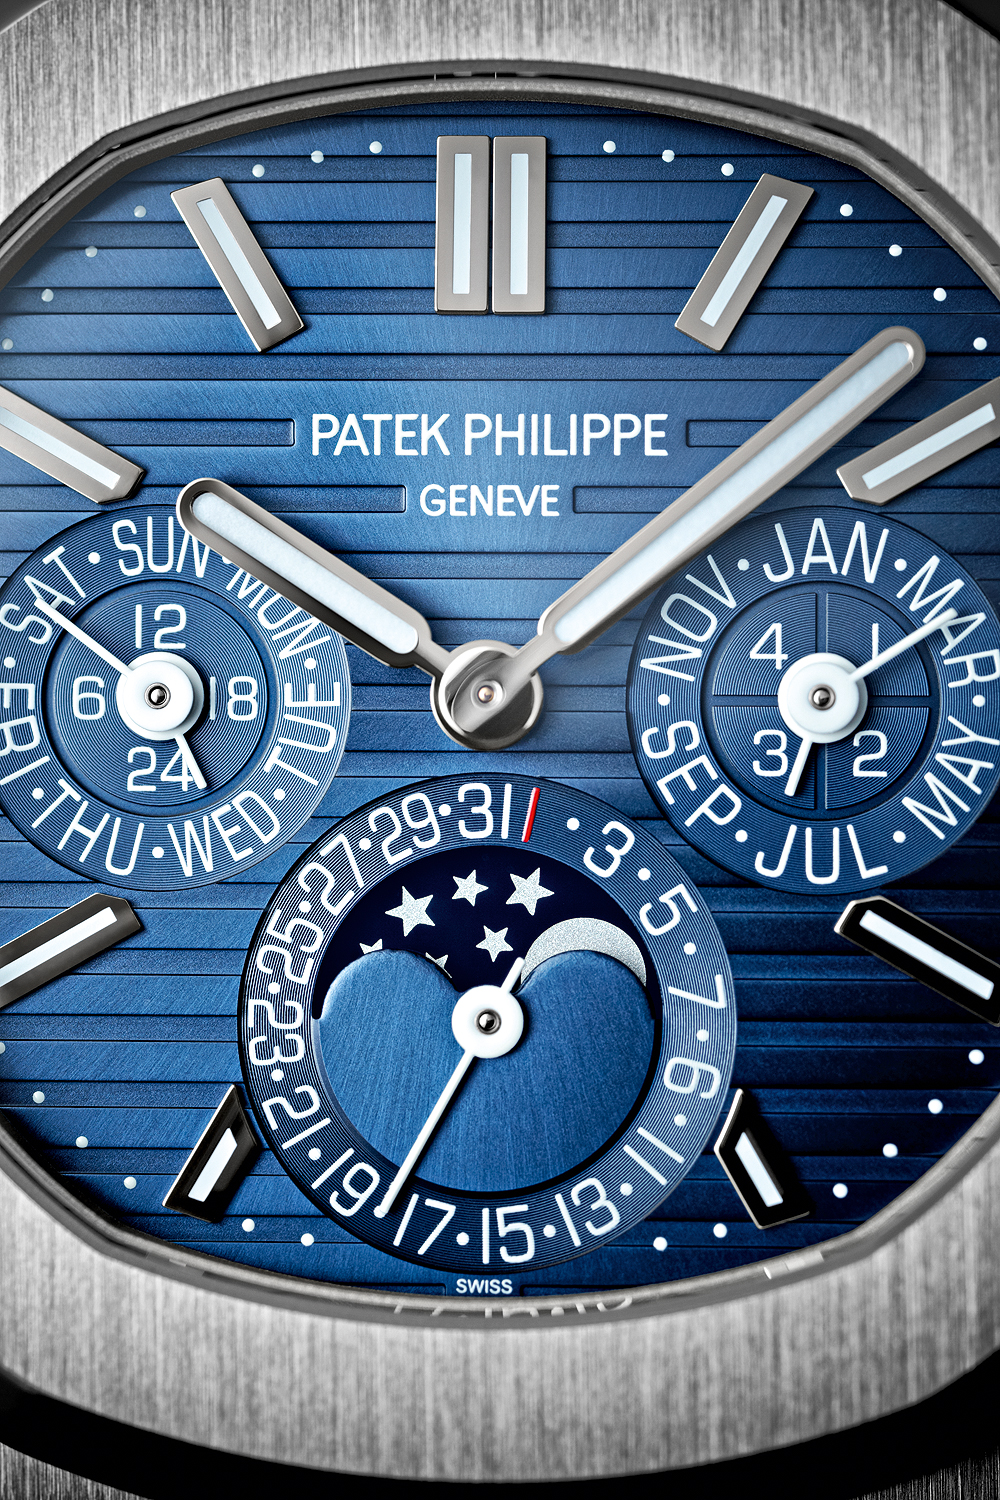 Patek Philippe Nautilus Perpetual Calendar Sunburst Dial